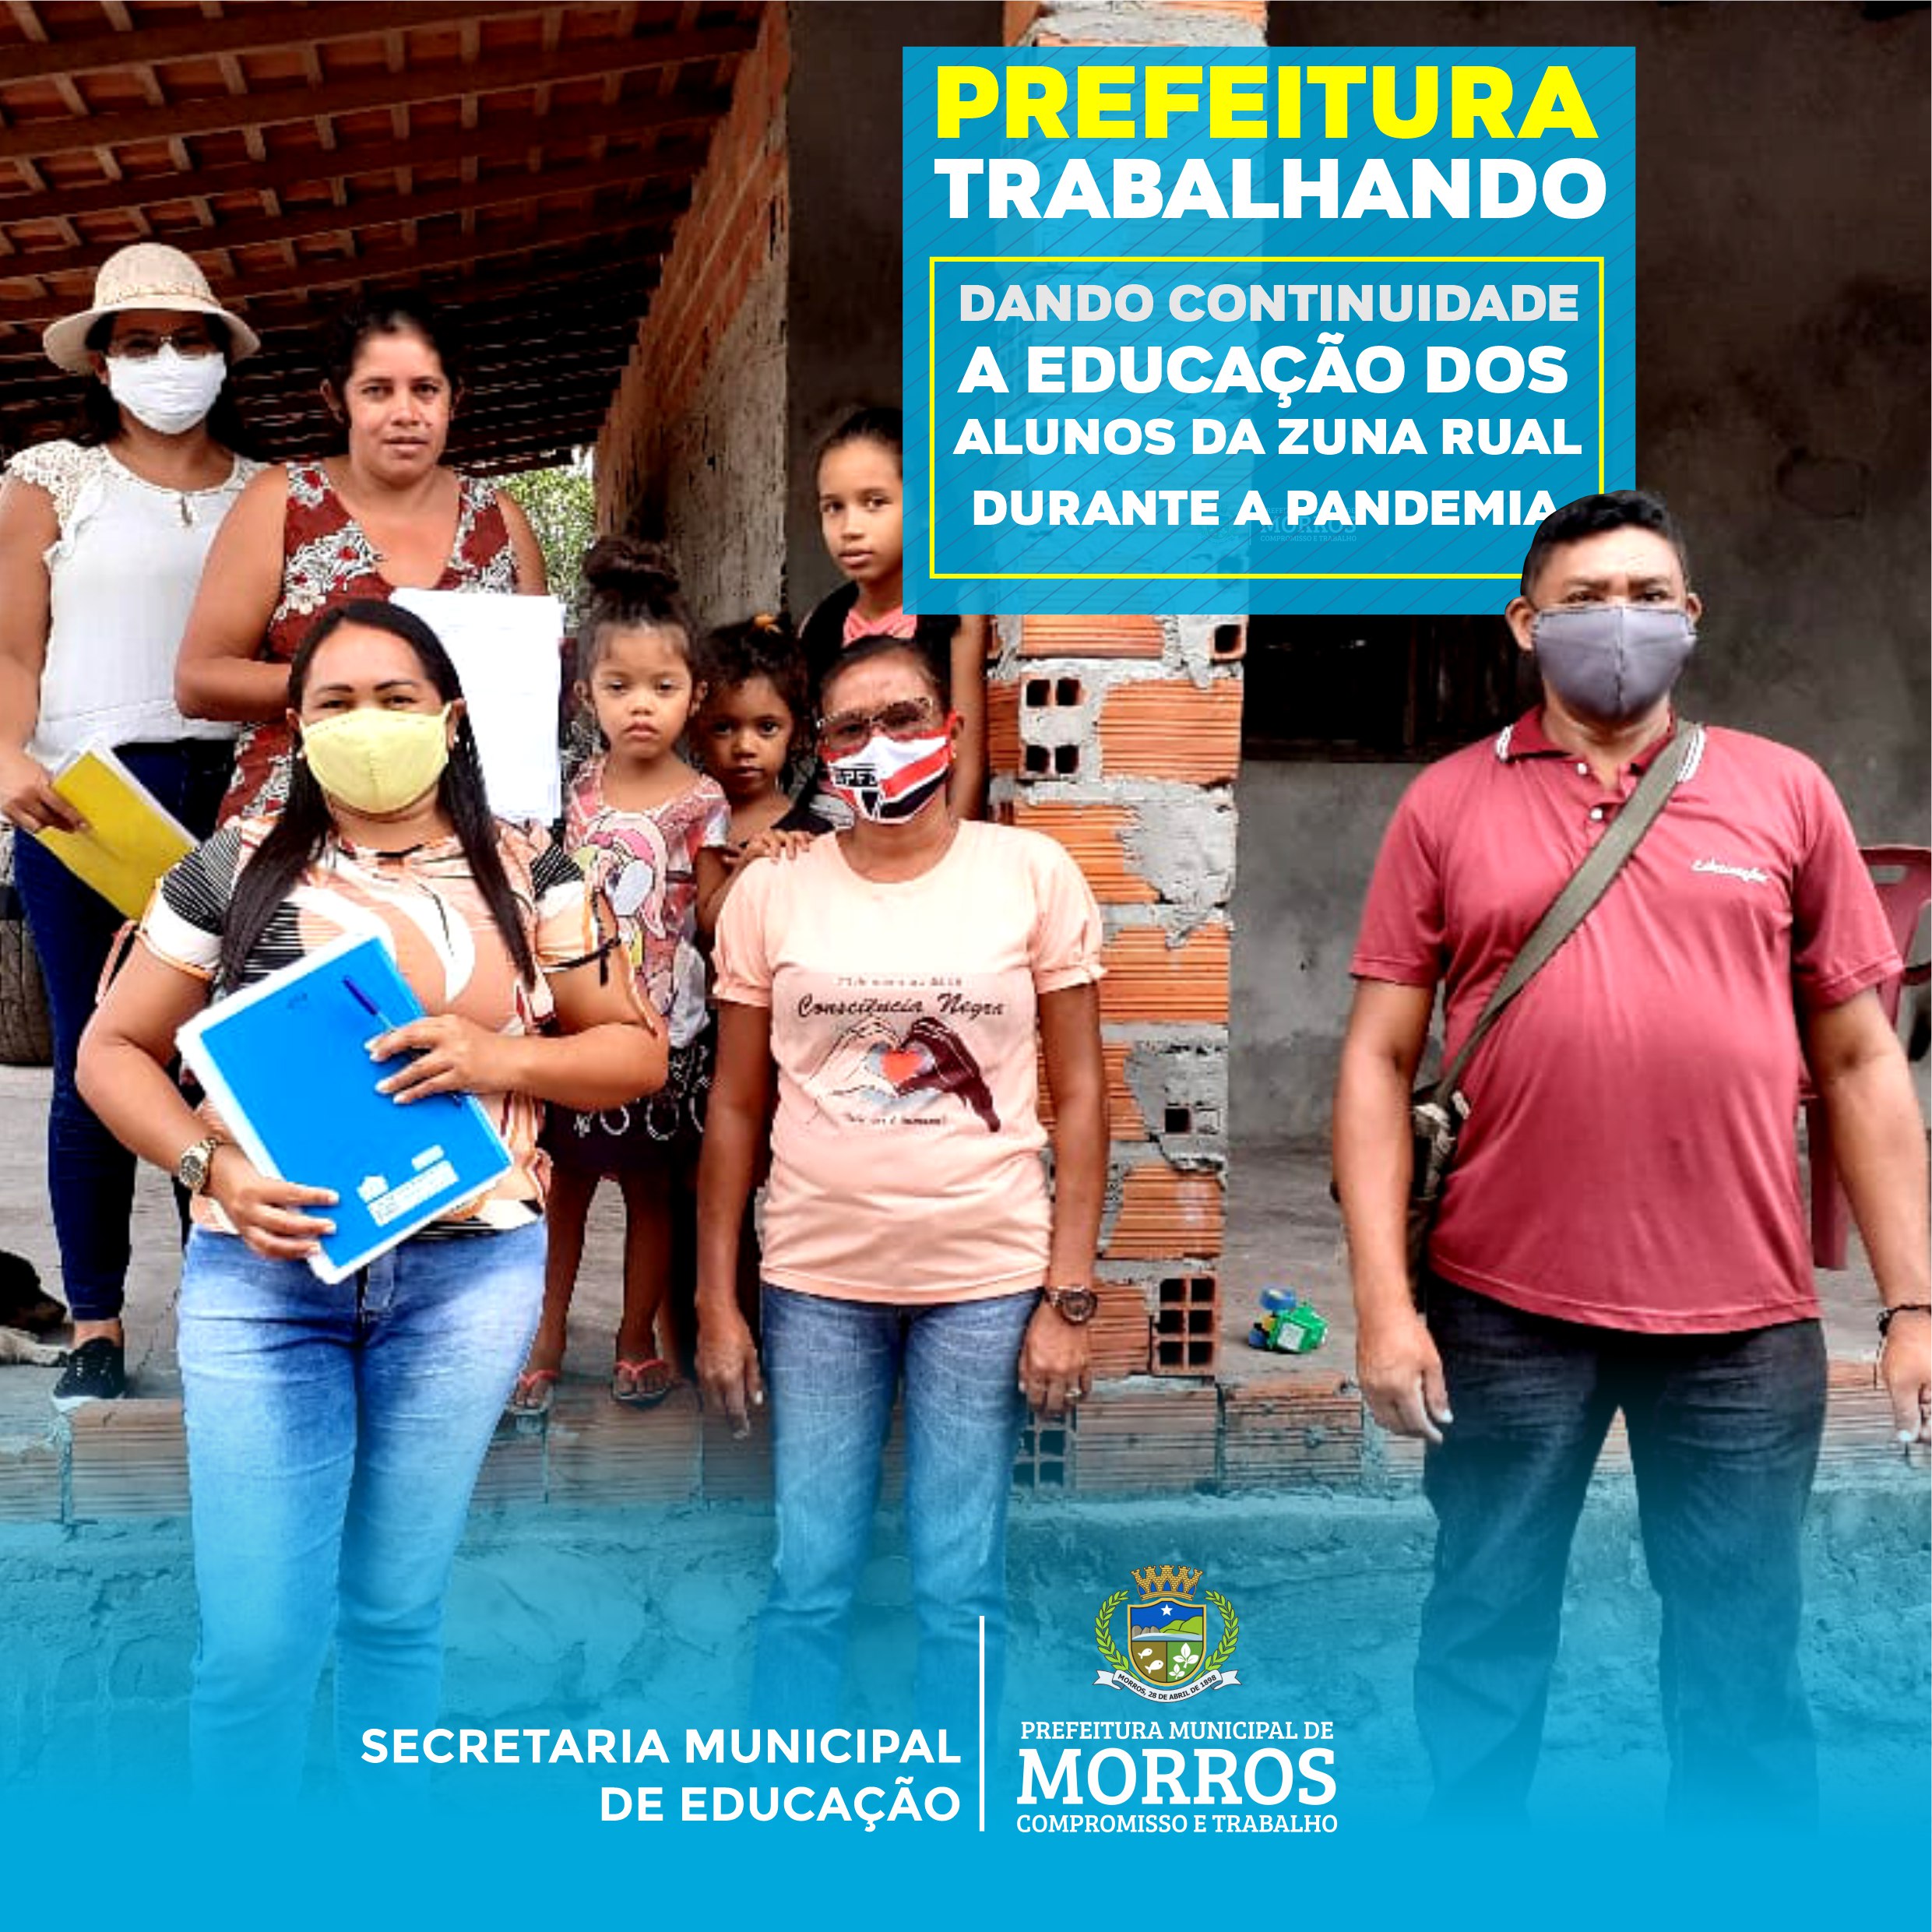 A Prefeitura Municipal de Morros, através da Secretaria de Educação, não tem medido esforços para dar continuidade à educação dos alunos da zona rural durante a pandemia